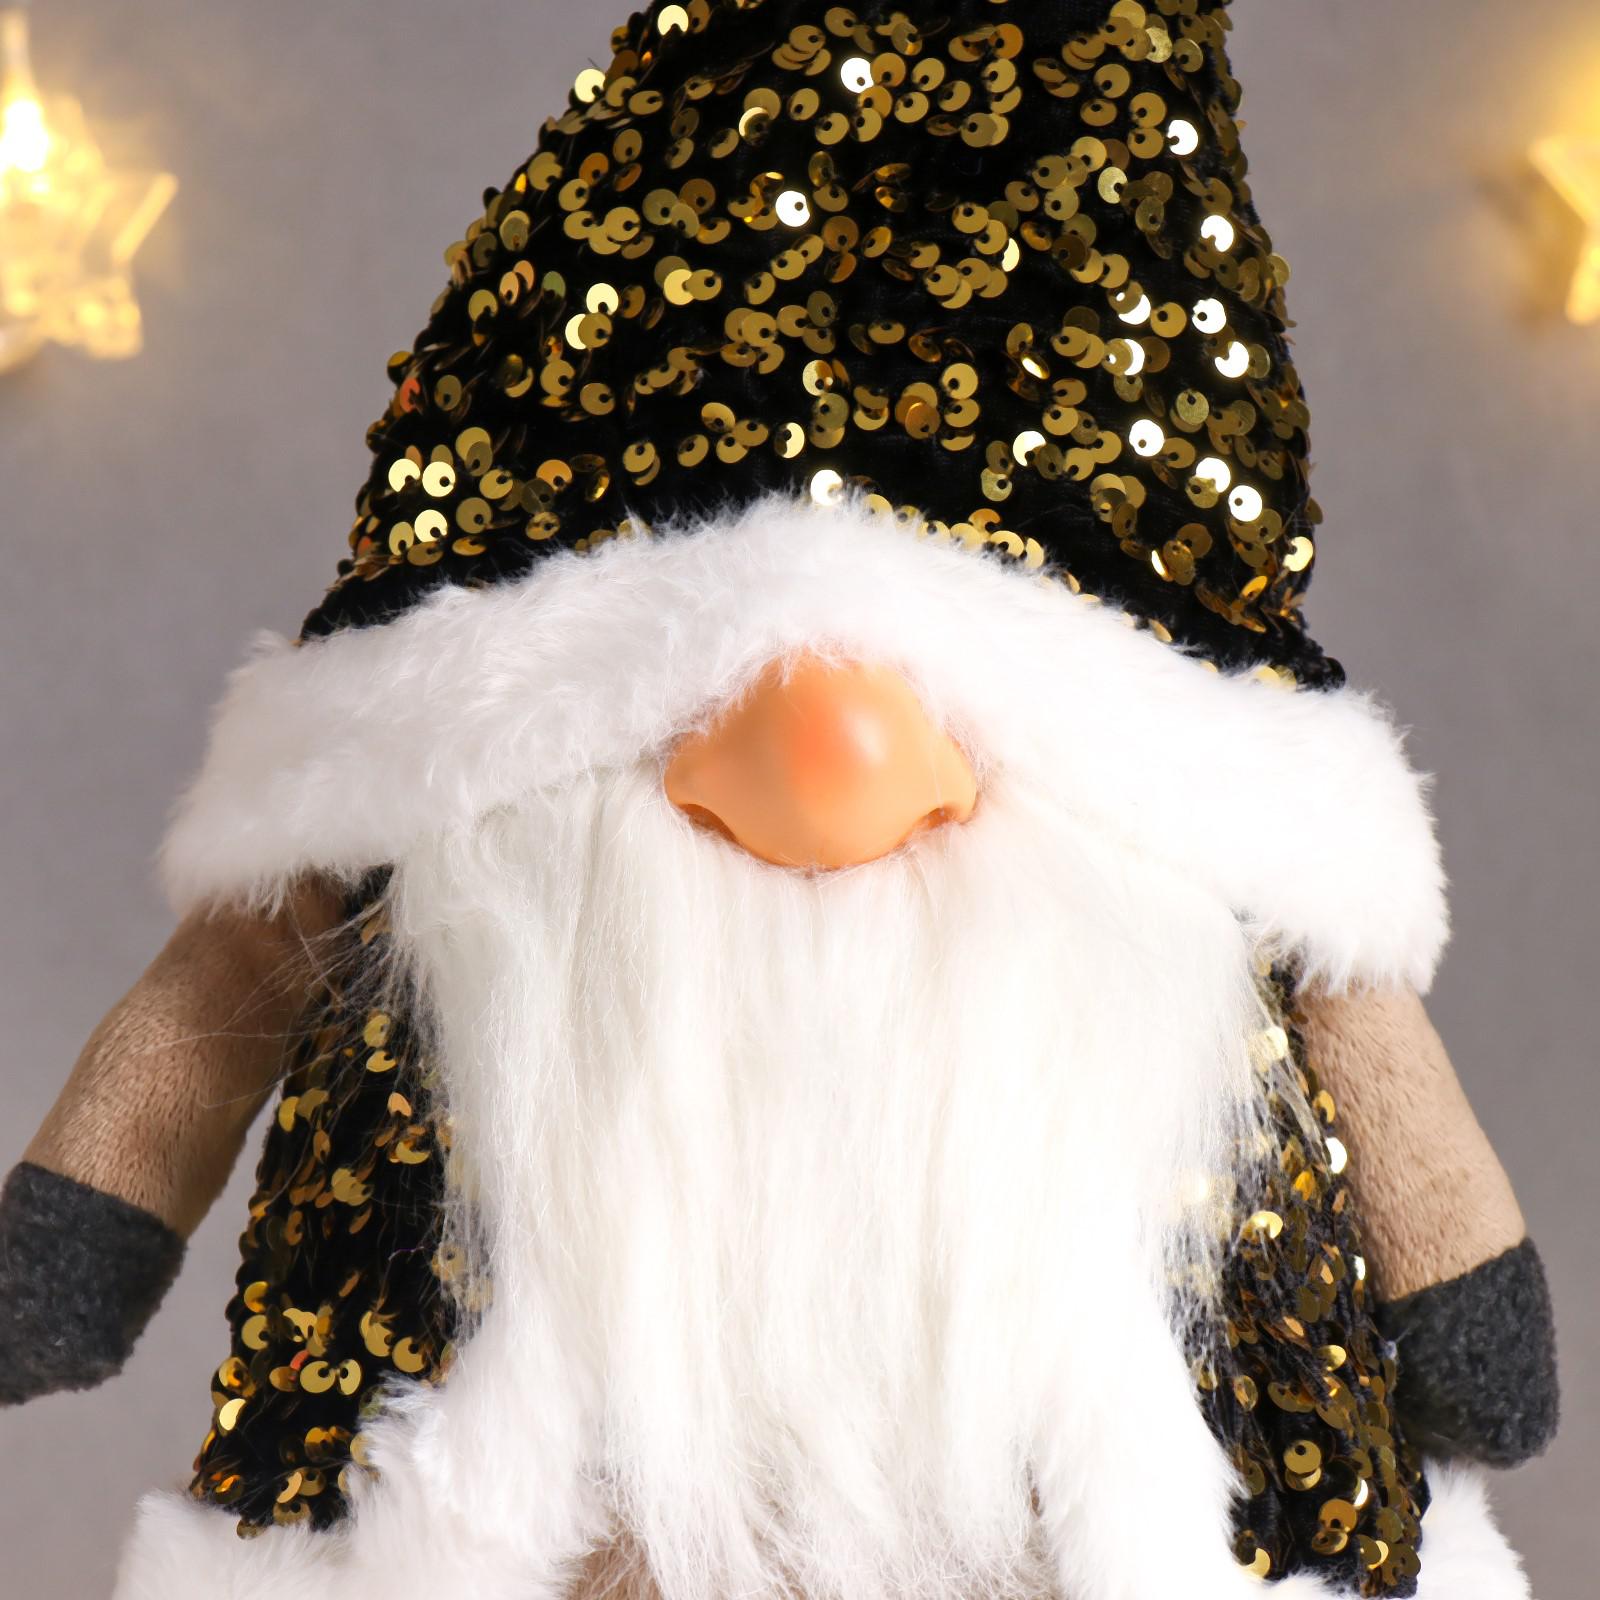 Кукла интерьерная Зимнее волшебство «Дед Мороз в золотом колпаке и жилетке с пайетками» 55х16х22 см - фото 5